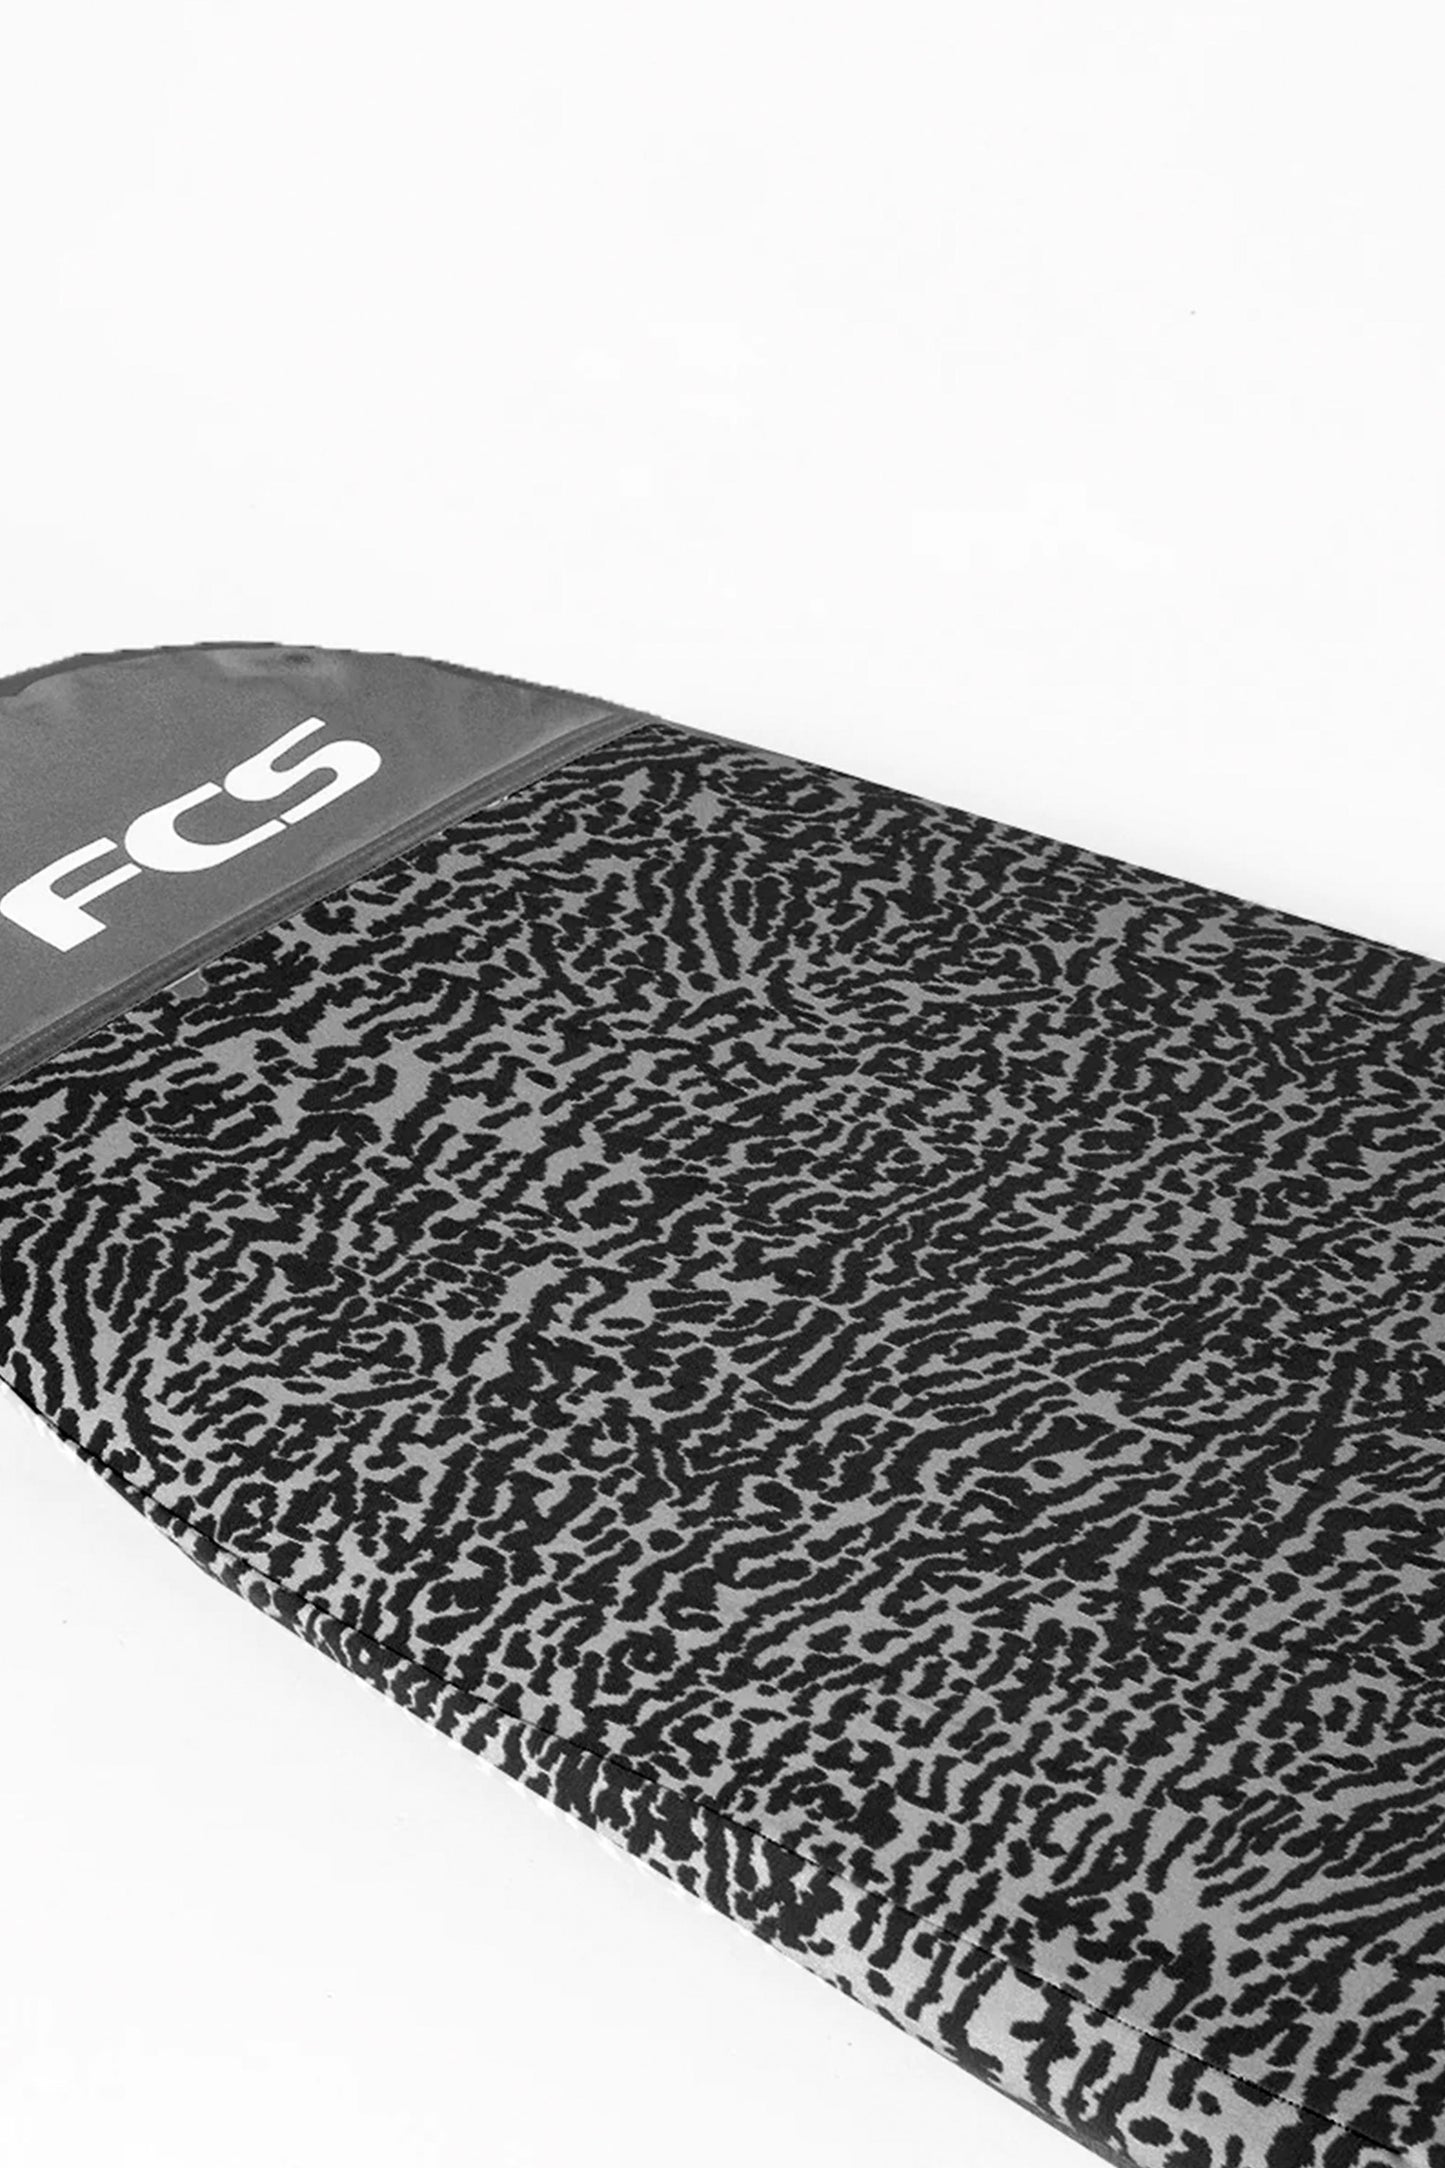 
                  
                    Pukas-Surf-Shop-fcs-Stretch-Long-Board-9.0-carbon
                  
                